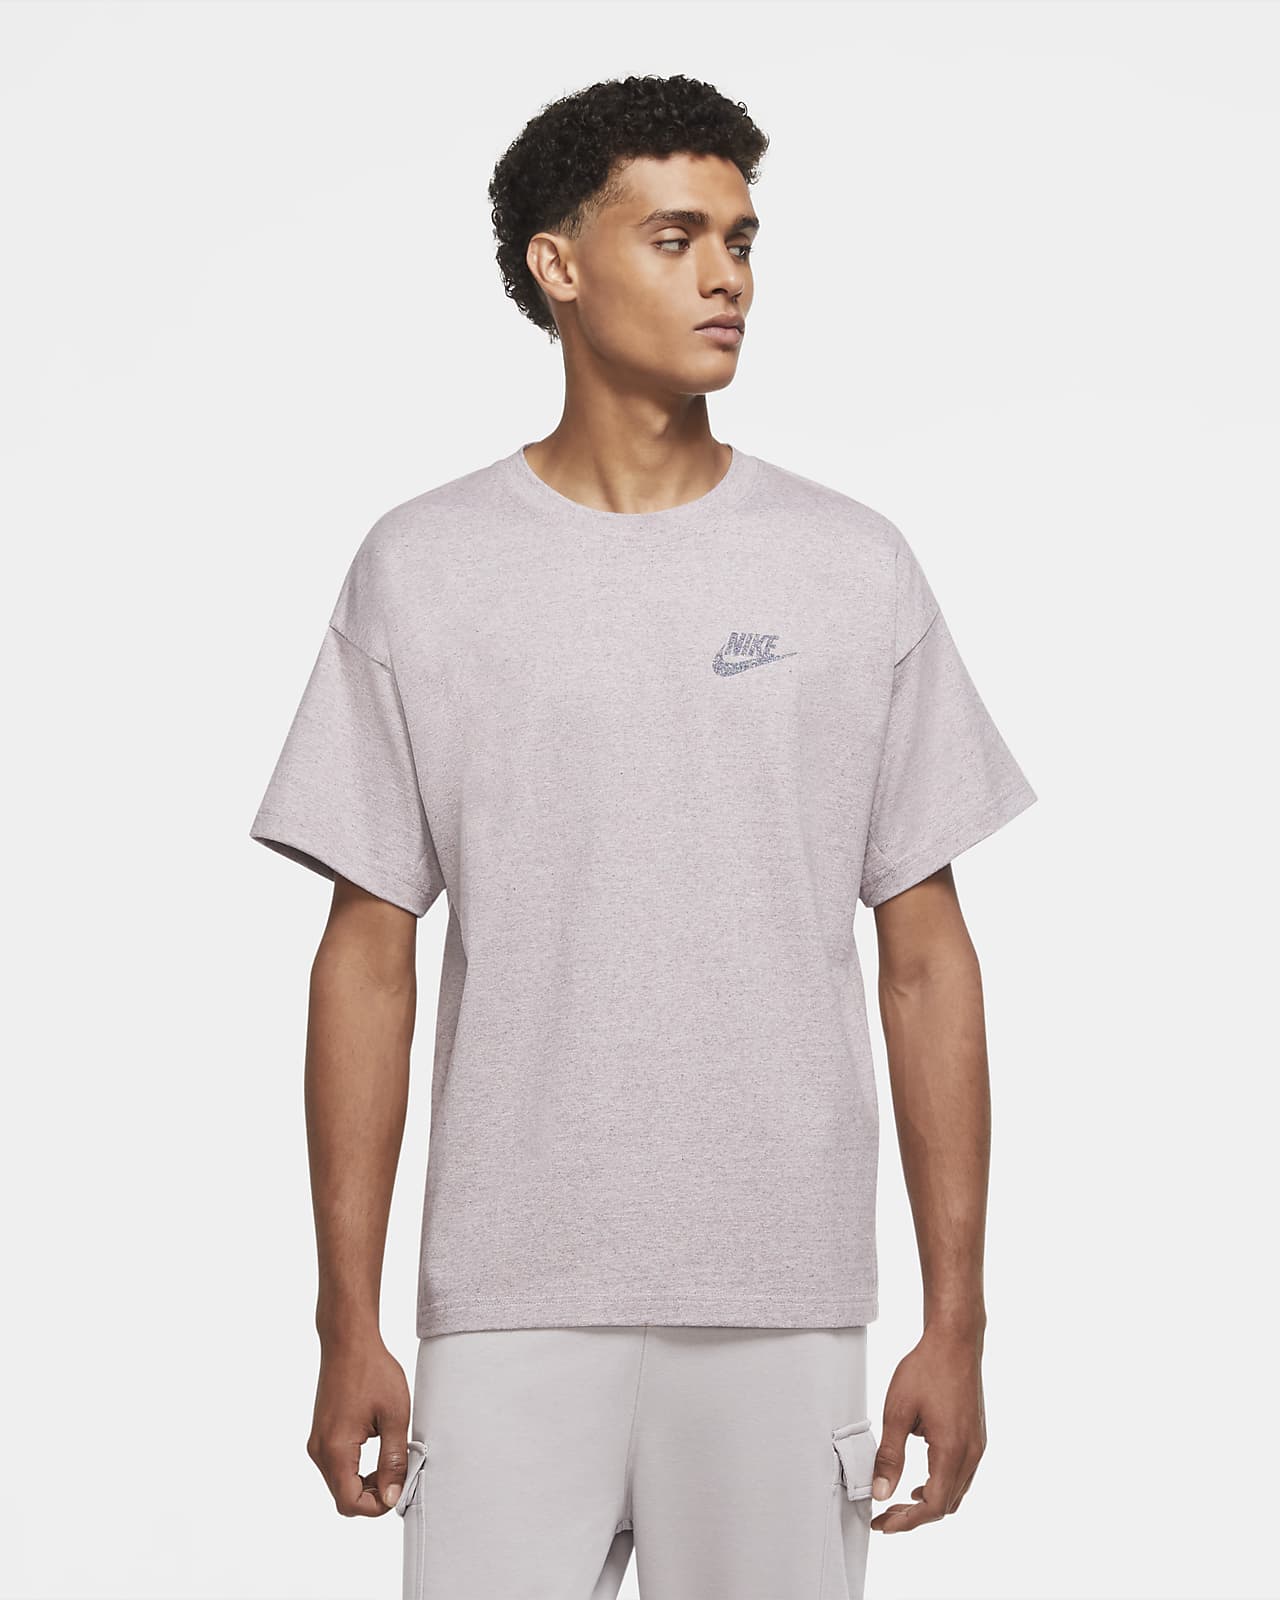 Nike Sportswear Men's Short-Sleeve Top 